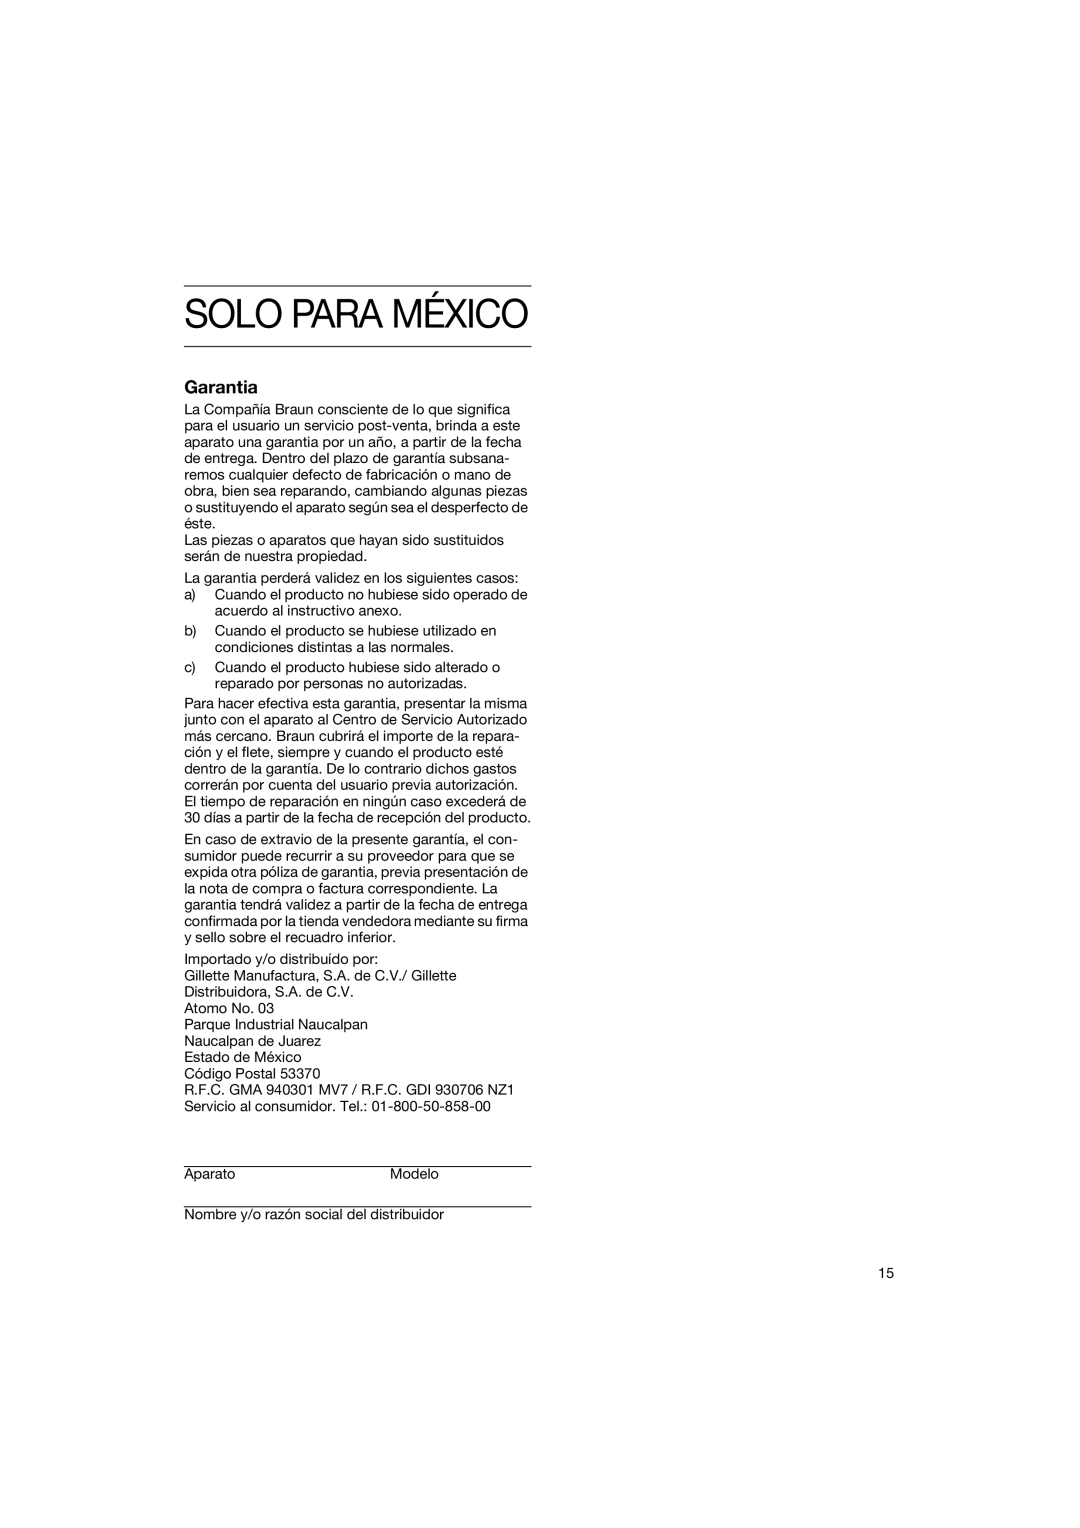 Braun HT 500W, HT 500 B manual Solo Para México, Garantia 